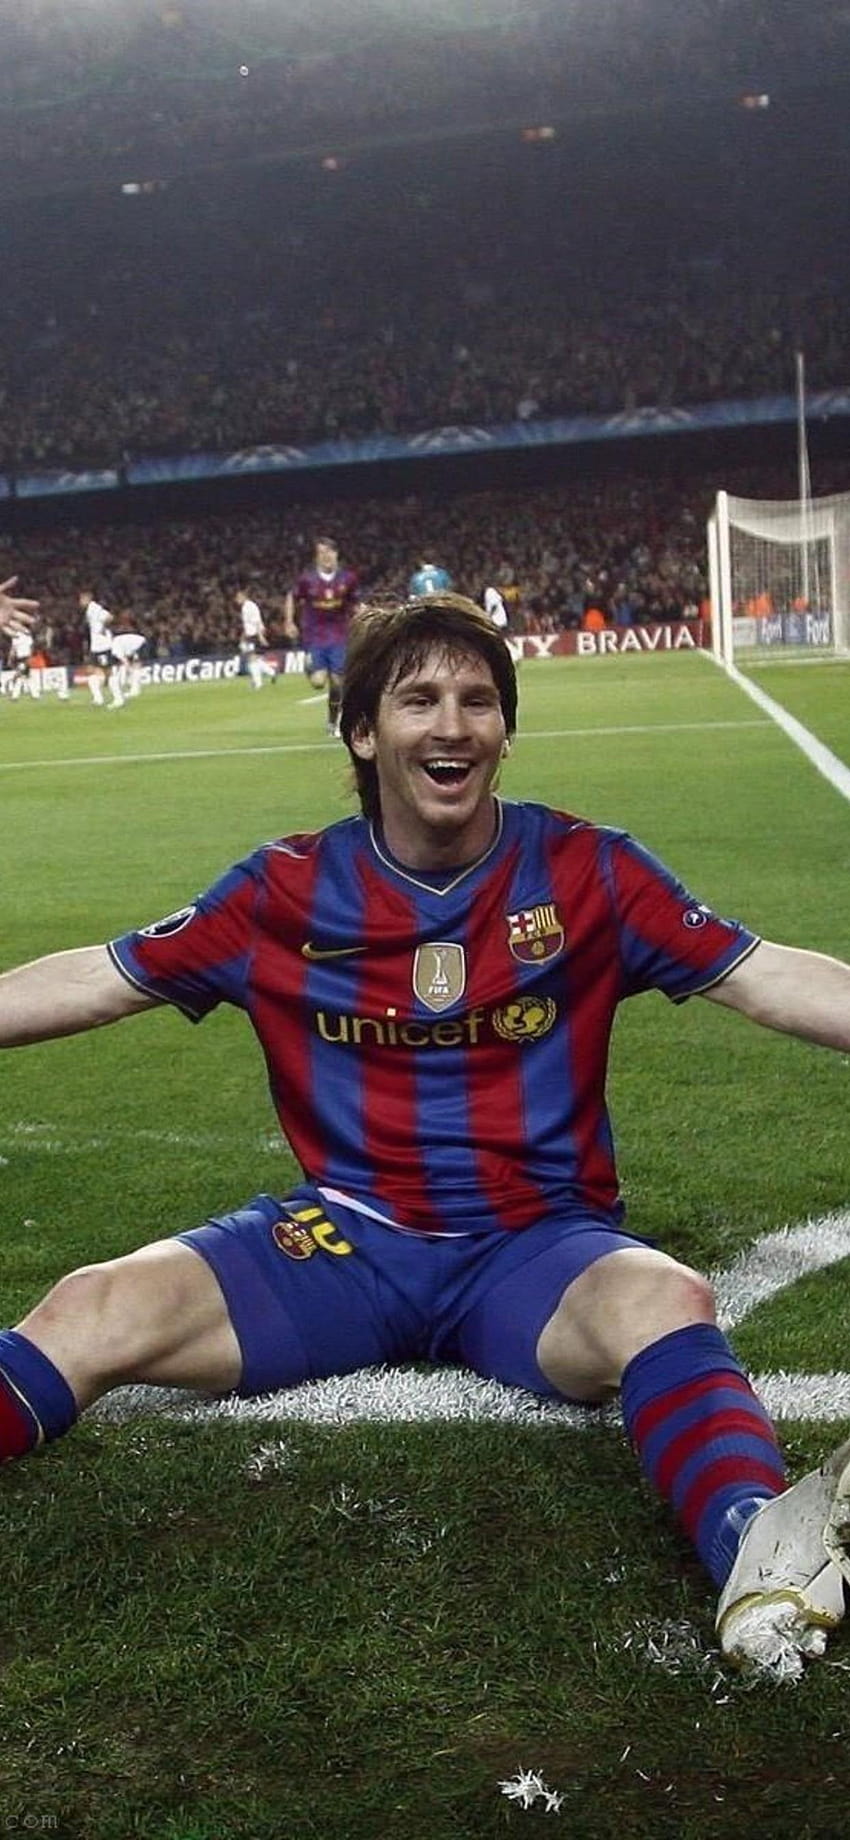 Với bộ sưu tập FCB Leo Messi Iphone XS MAX, không gì tuyệt vời hơn khi chụp những bức ảnh đẹp và truyền tải màn hình với chất lượng tốt nhất. Bạn sẽ luôn được trải nghiệm hình ảnh tuyệt đẹp về siêu sao Messi cũng như CLB Barcelona trên chiếc điện thoại của mình.